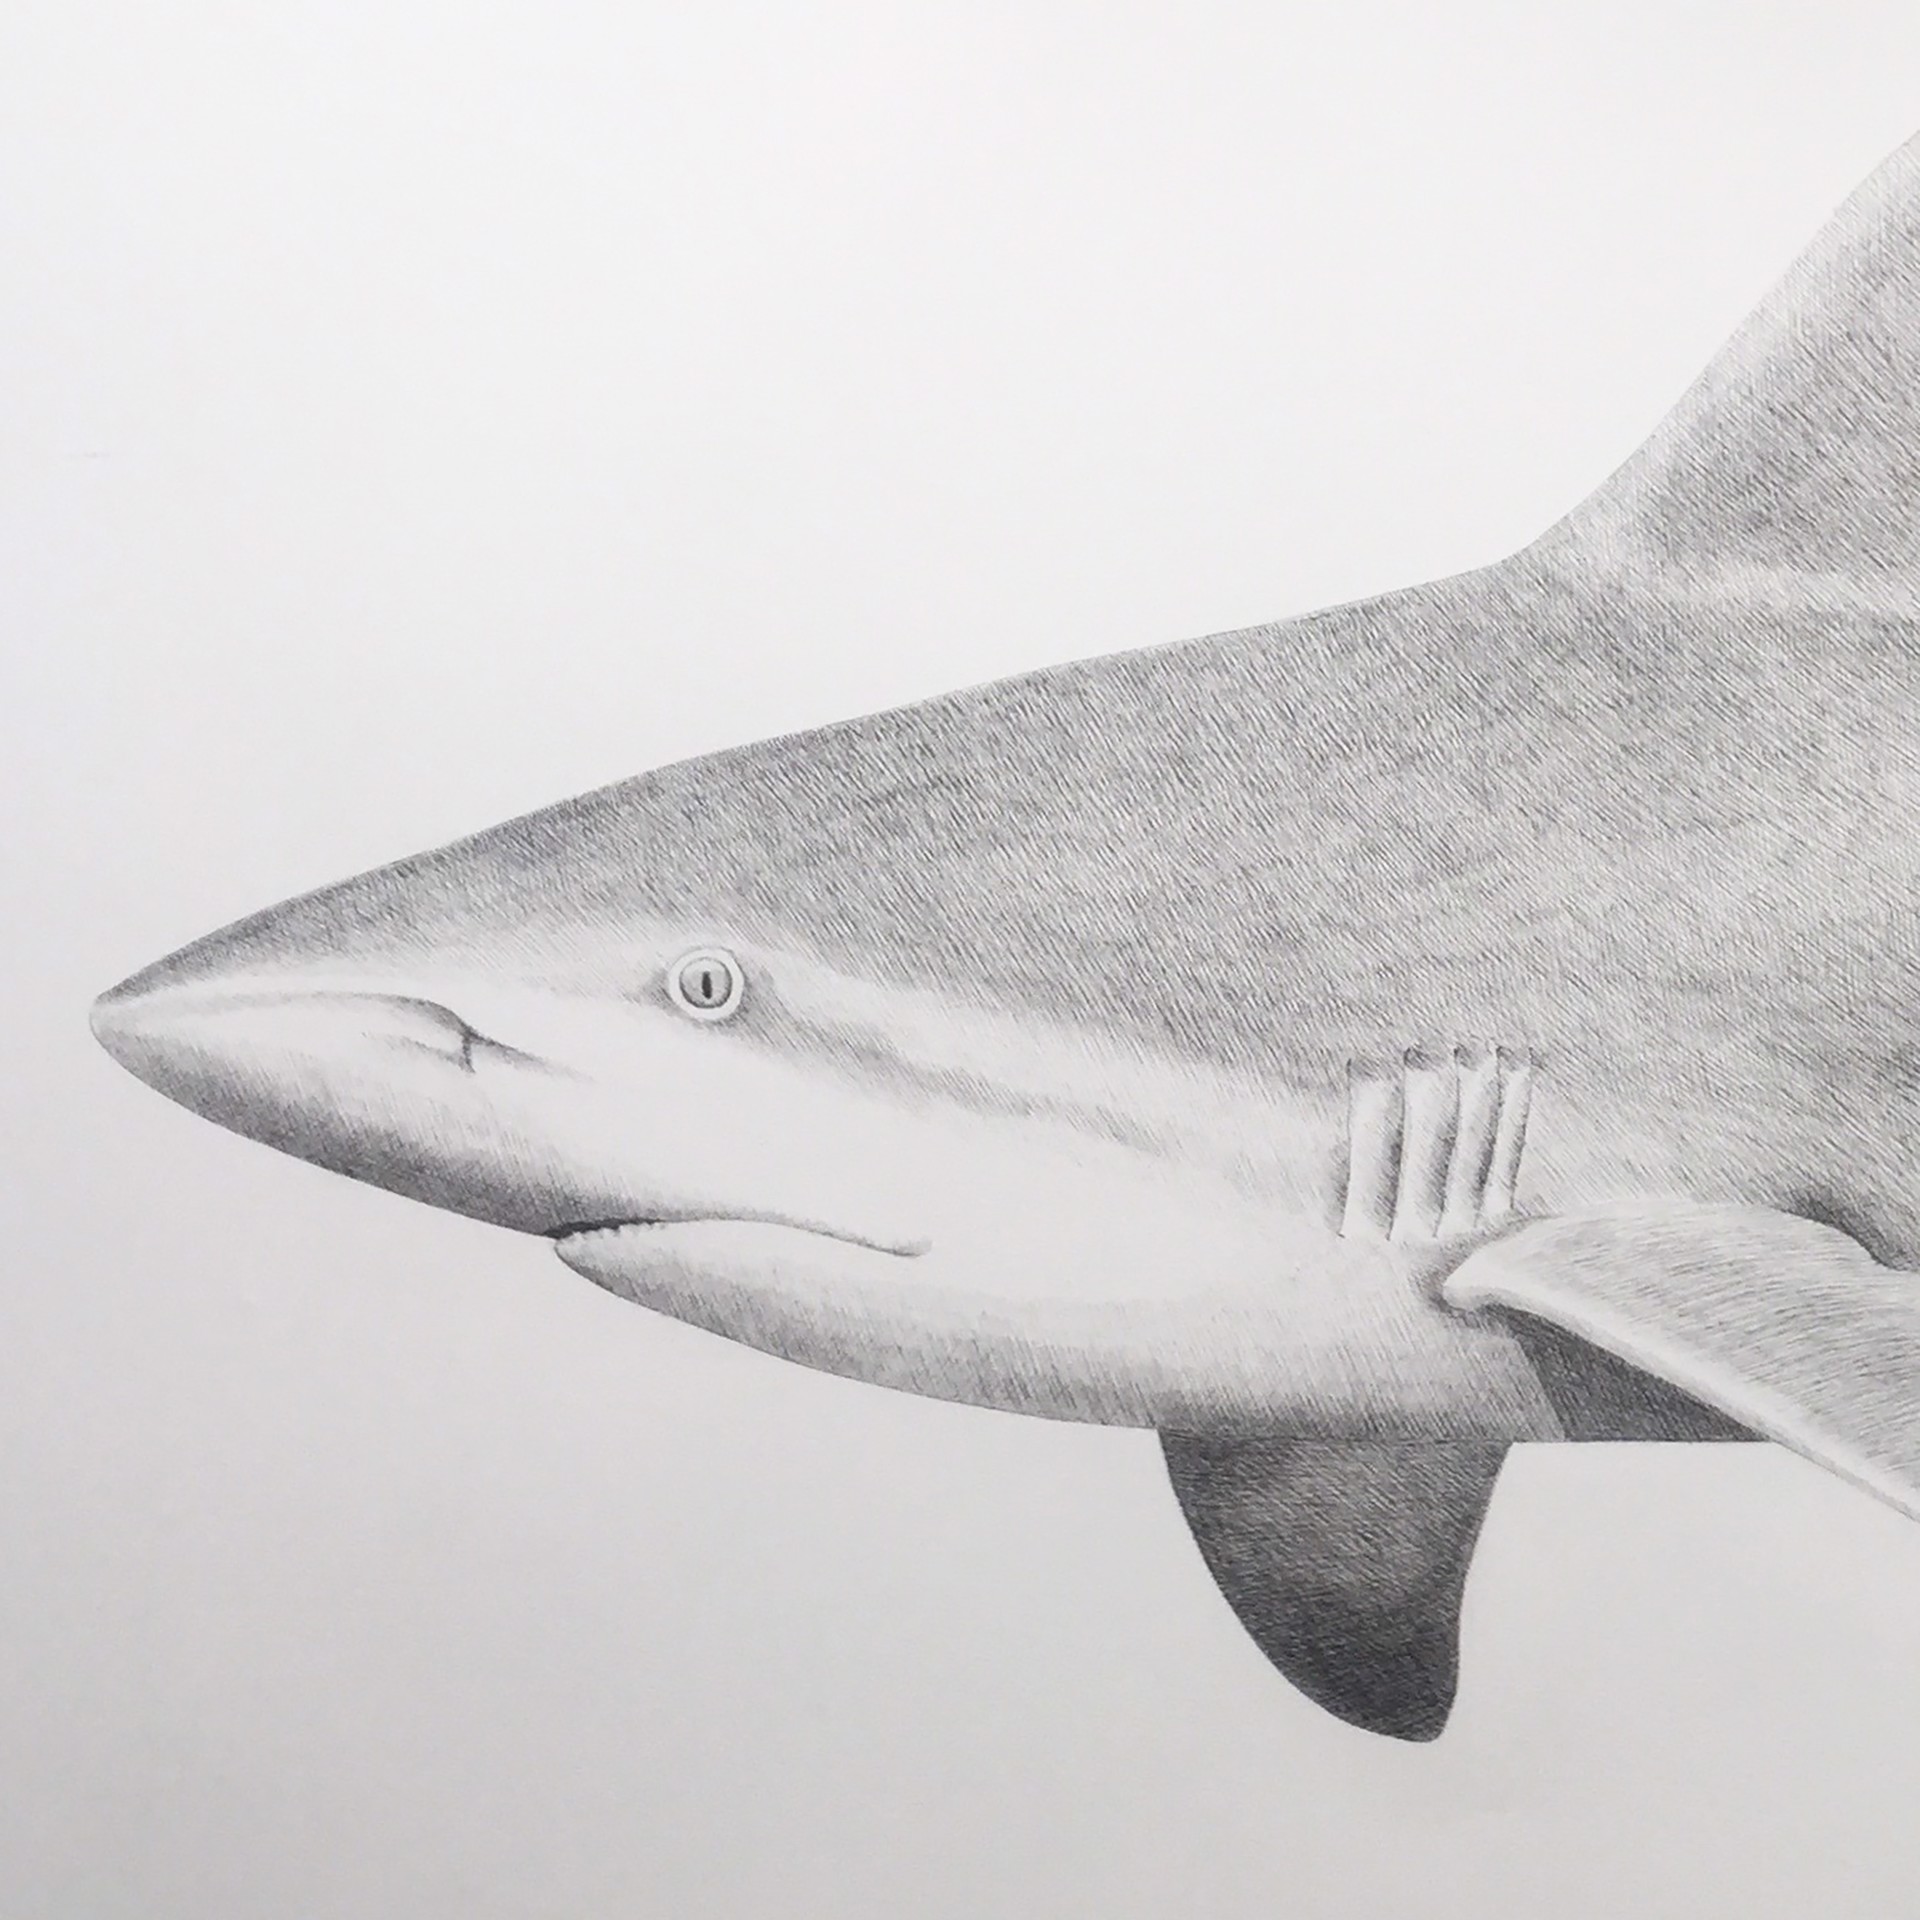 Sandbar Shark by Hannah Hanlon